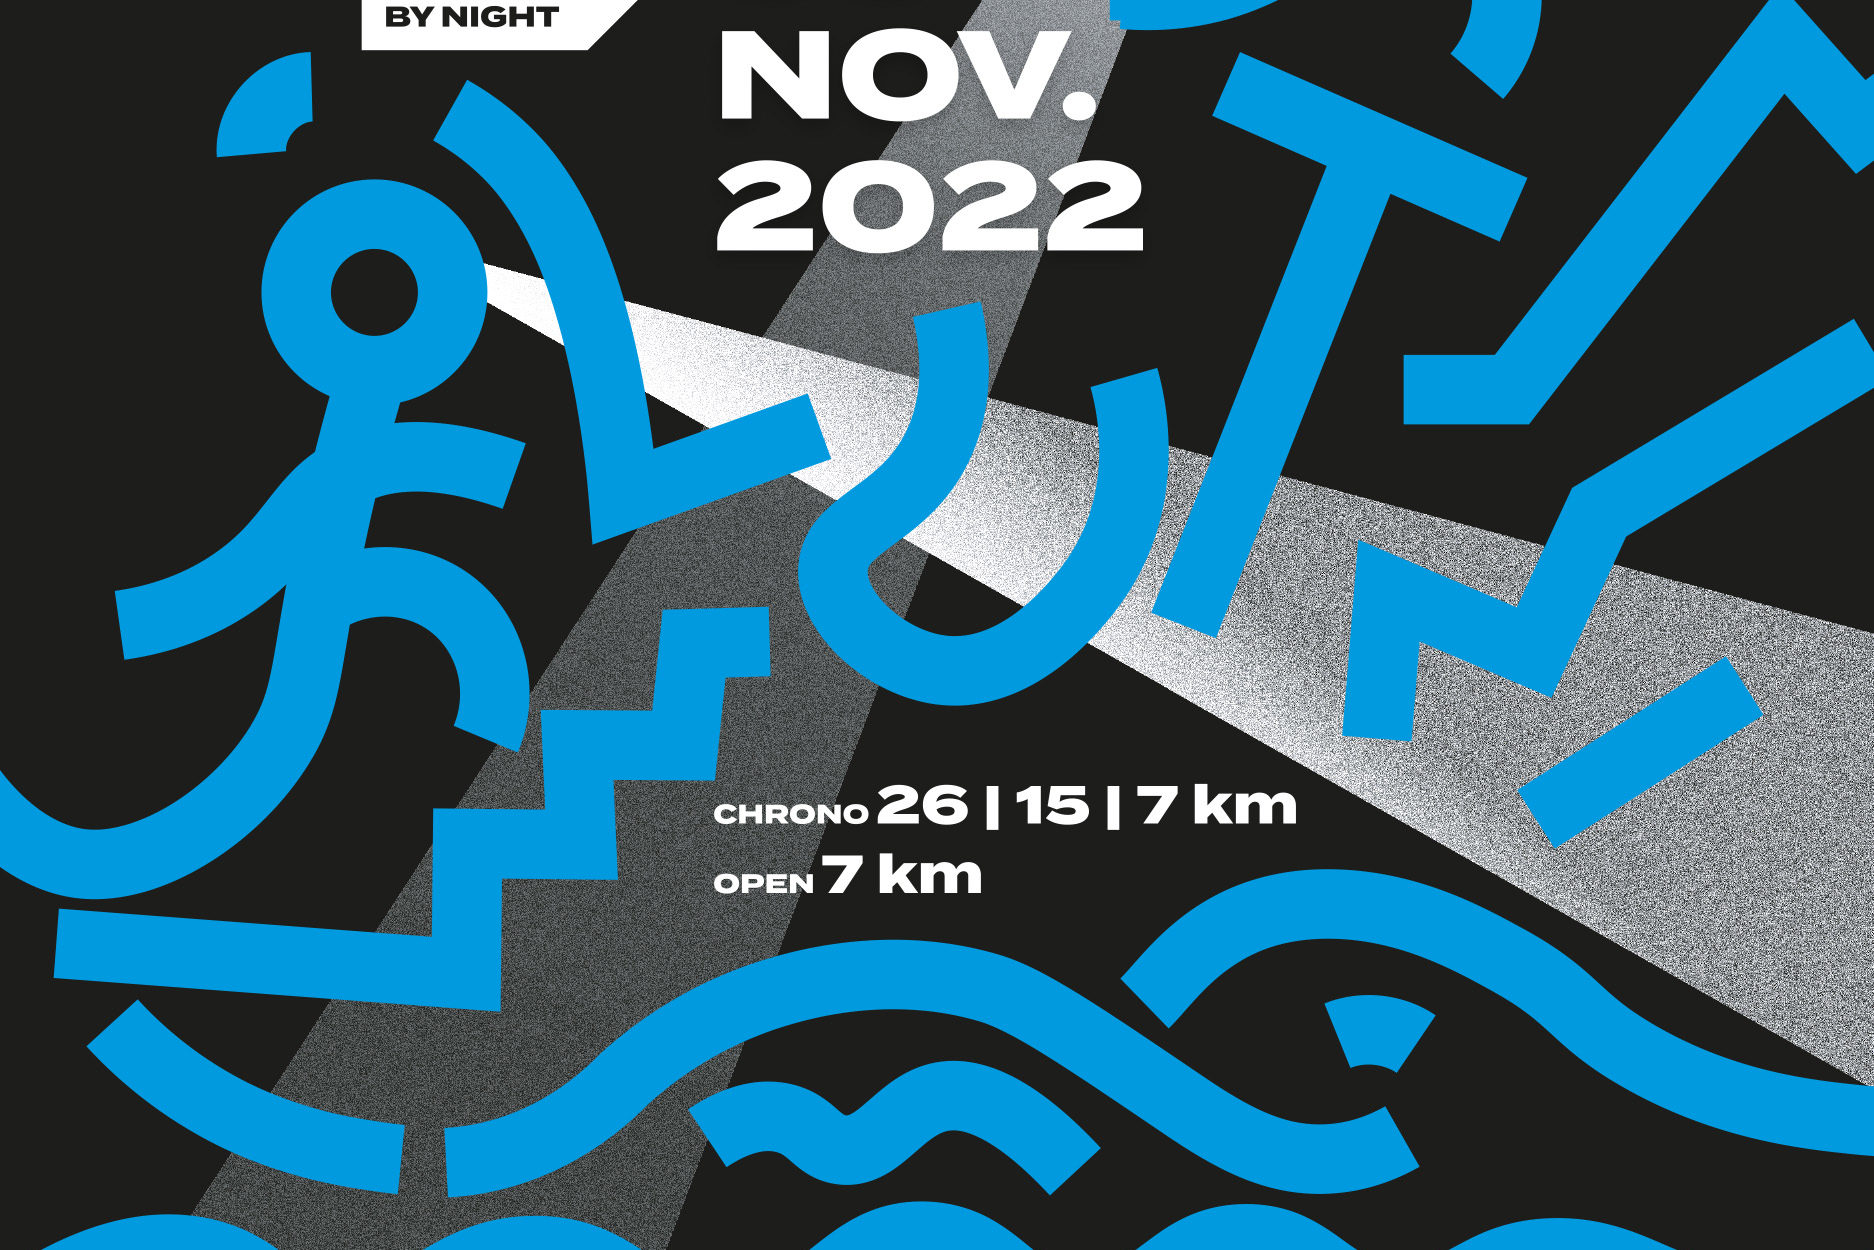 Le "LUT" Lyon Urban Trail By Night 2022